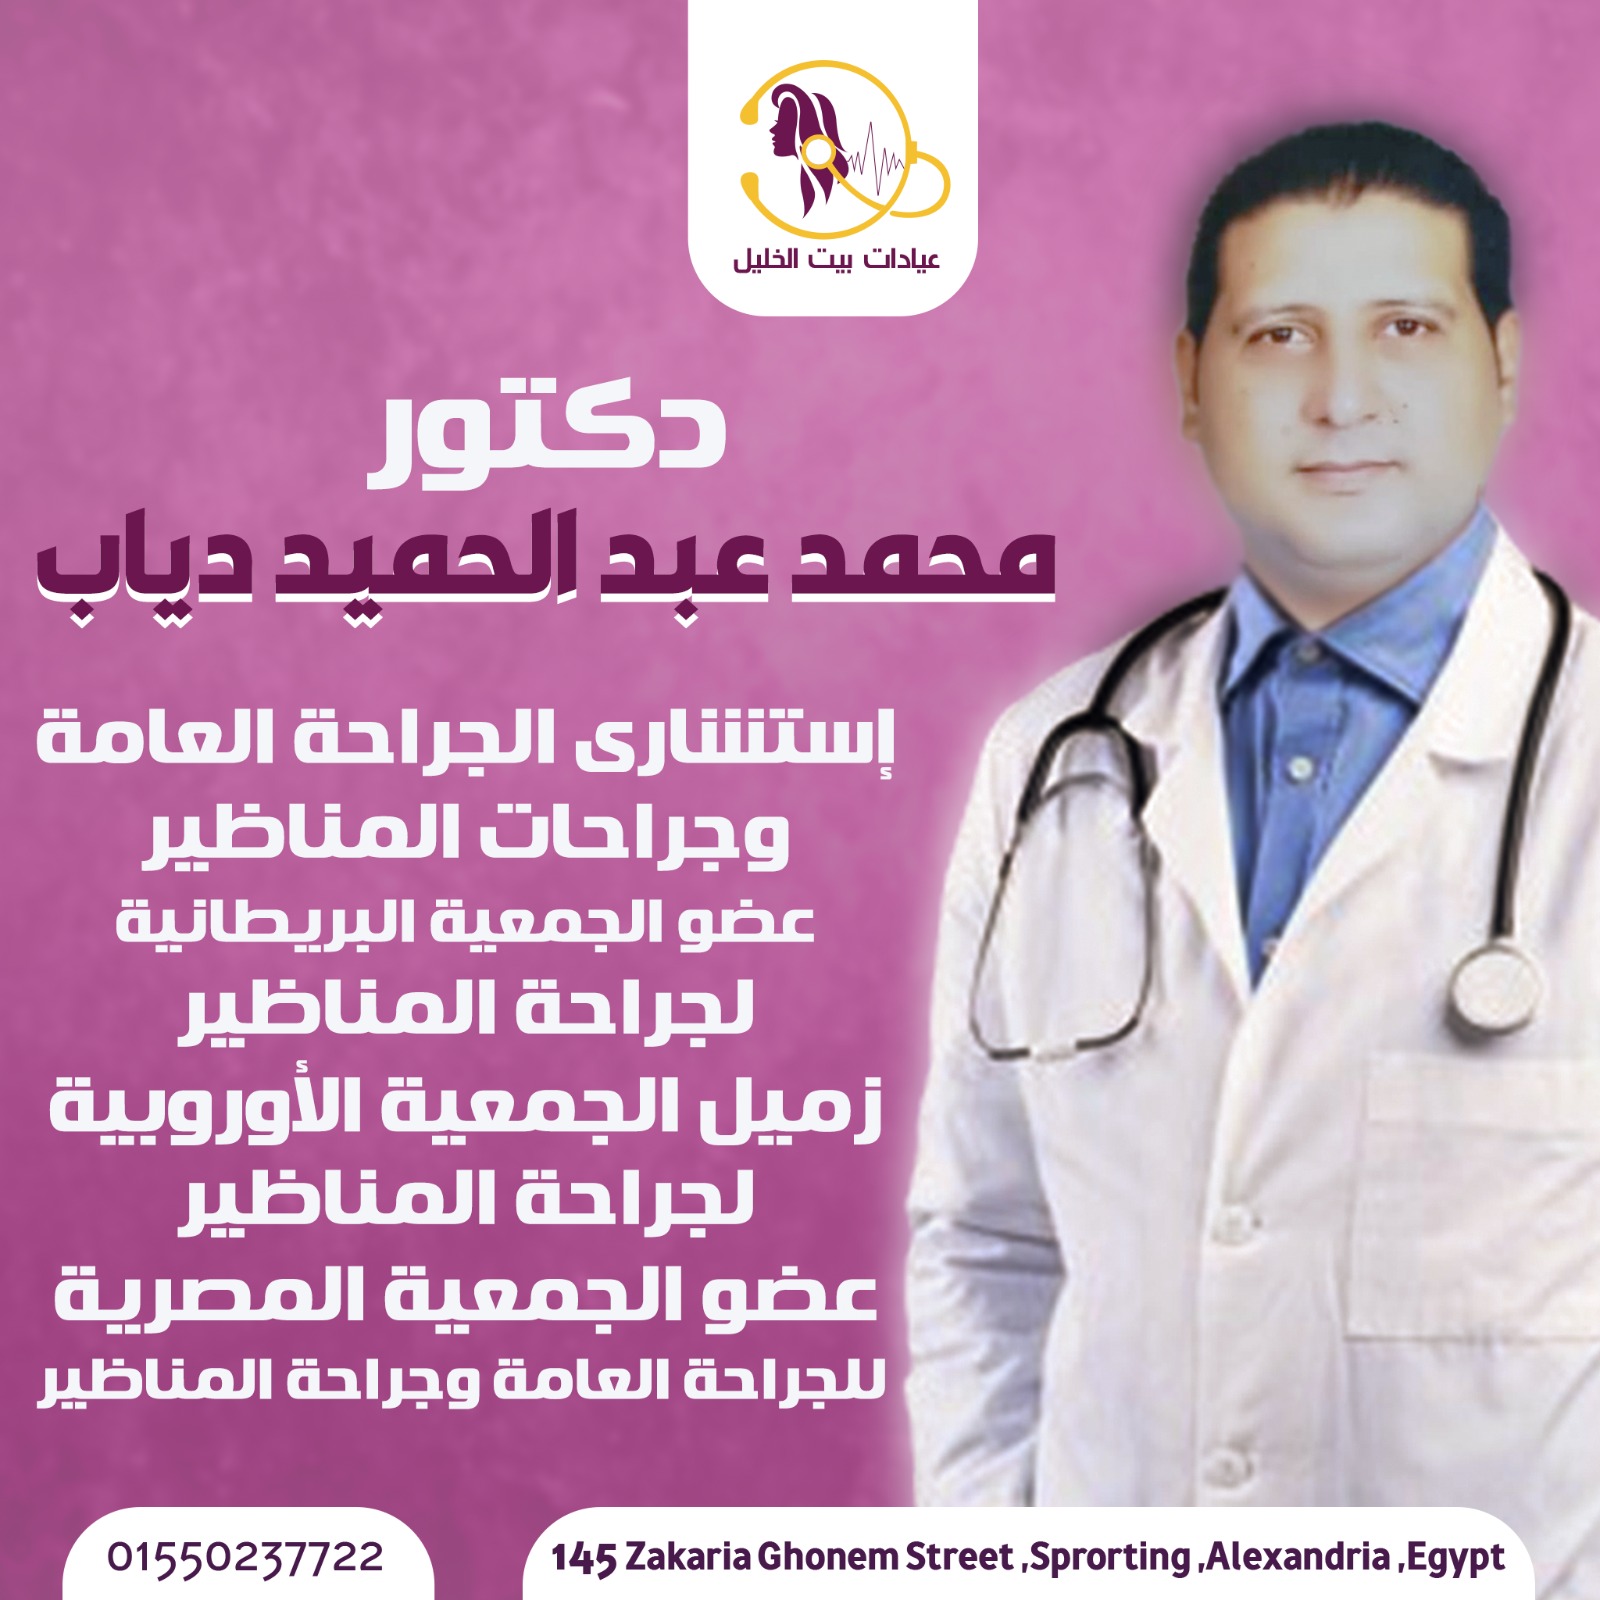 Dr. Mohamed Abdel-Hameed